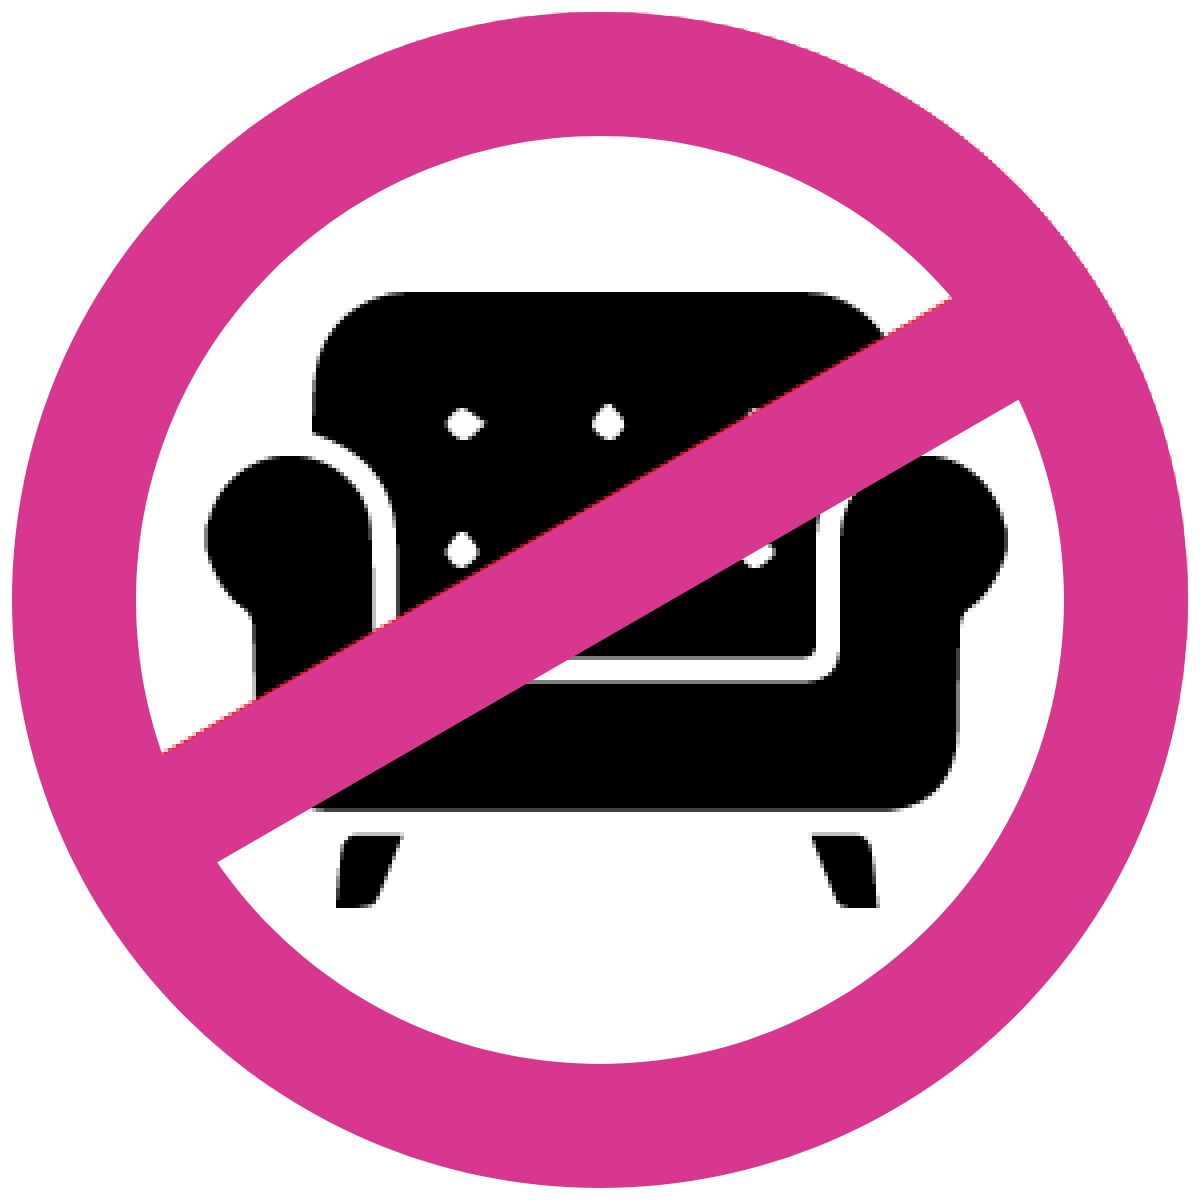 男性のお立ち台レディースシートの利用 禁止。